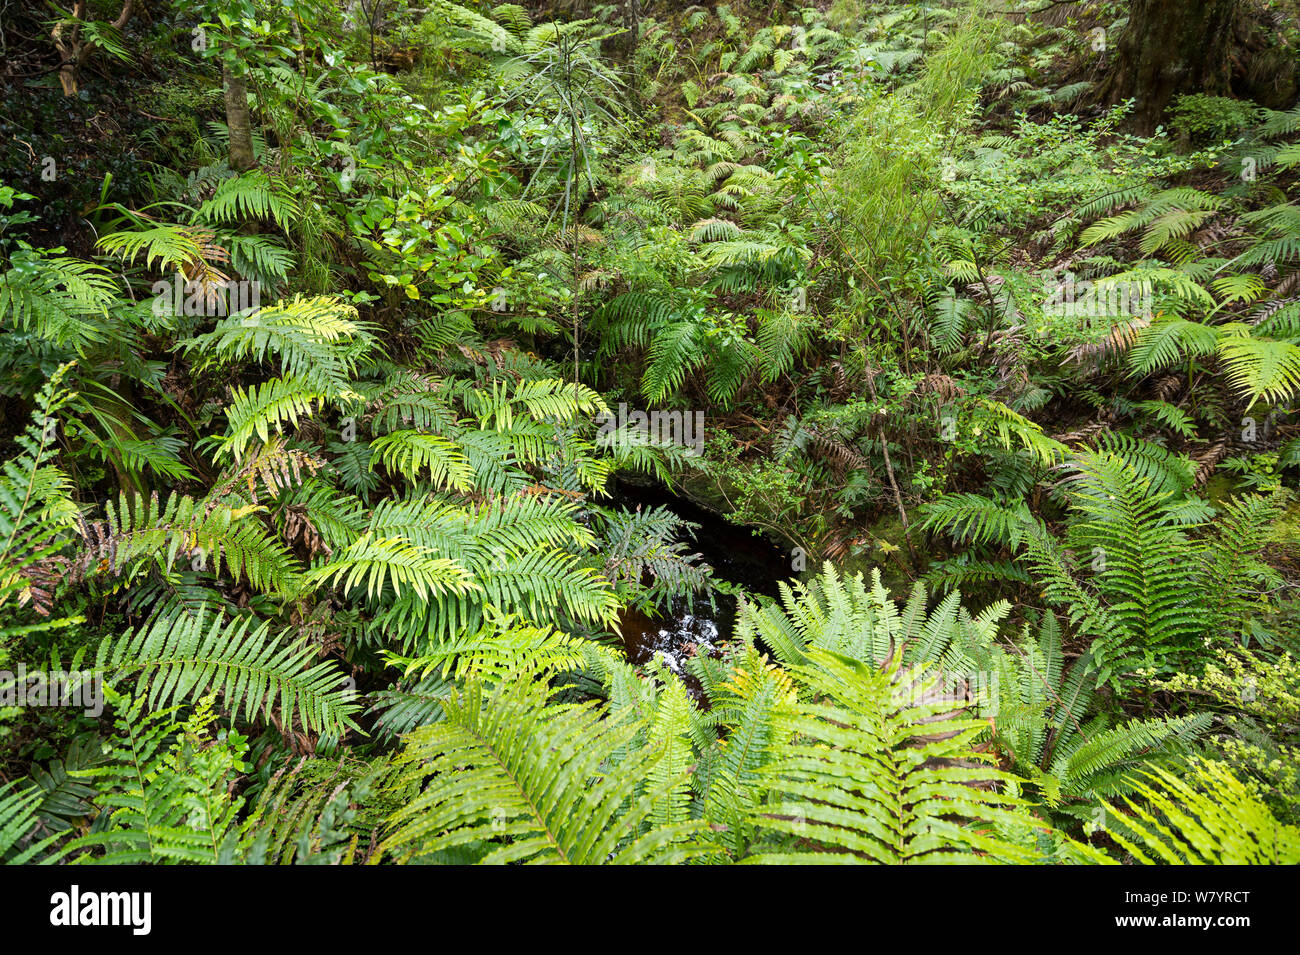 La forêt sur l'île de morue / Whenua Hou, principal habitat de l'espèce menacée de façon critique, Southland, Nouvelle-Zélande, février. Banque D'Images